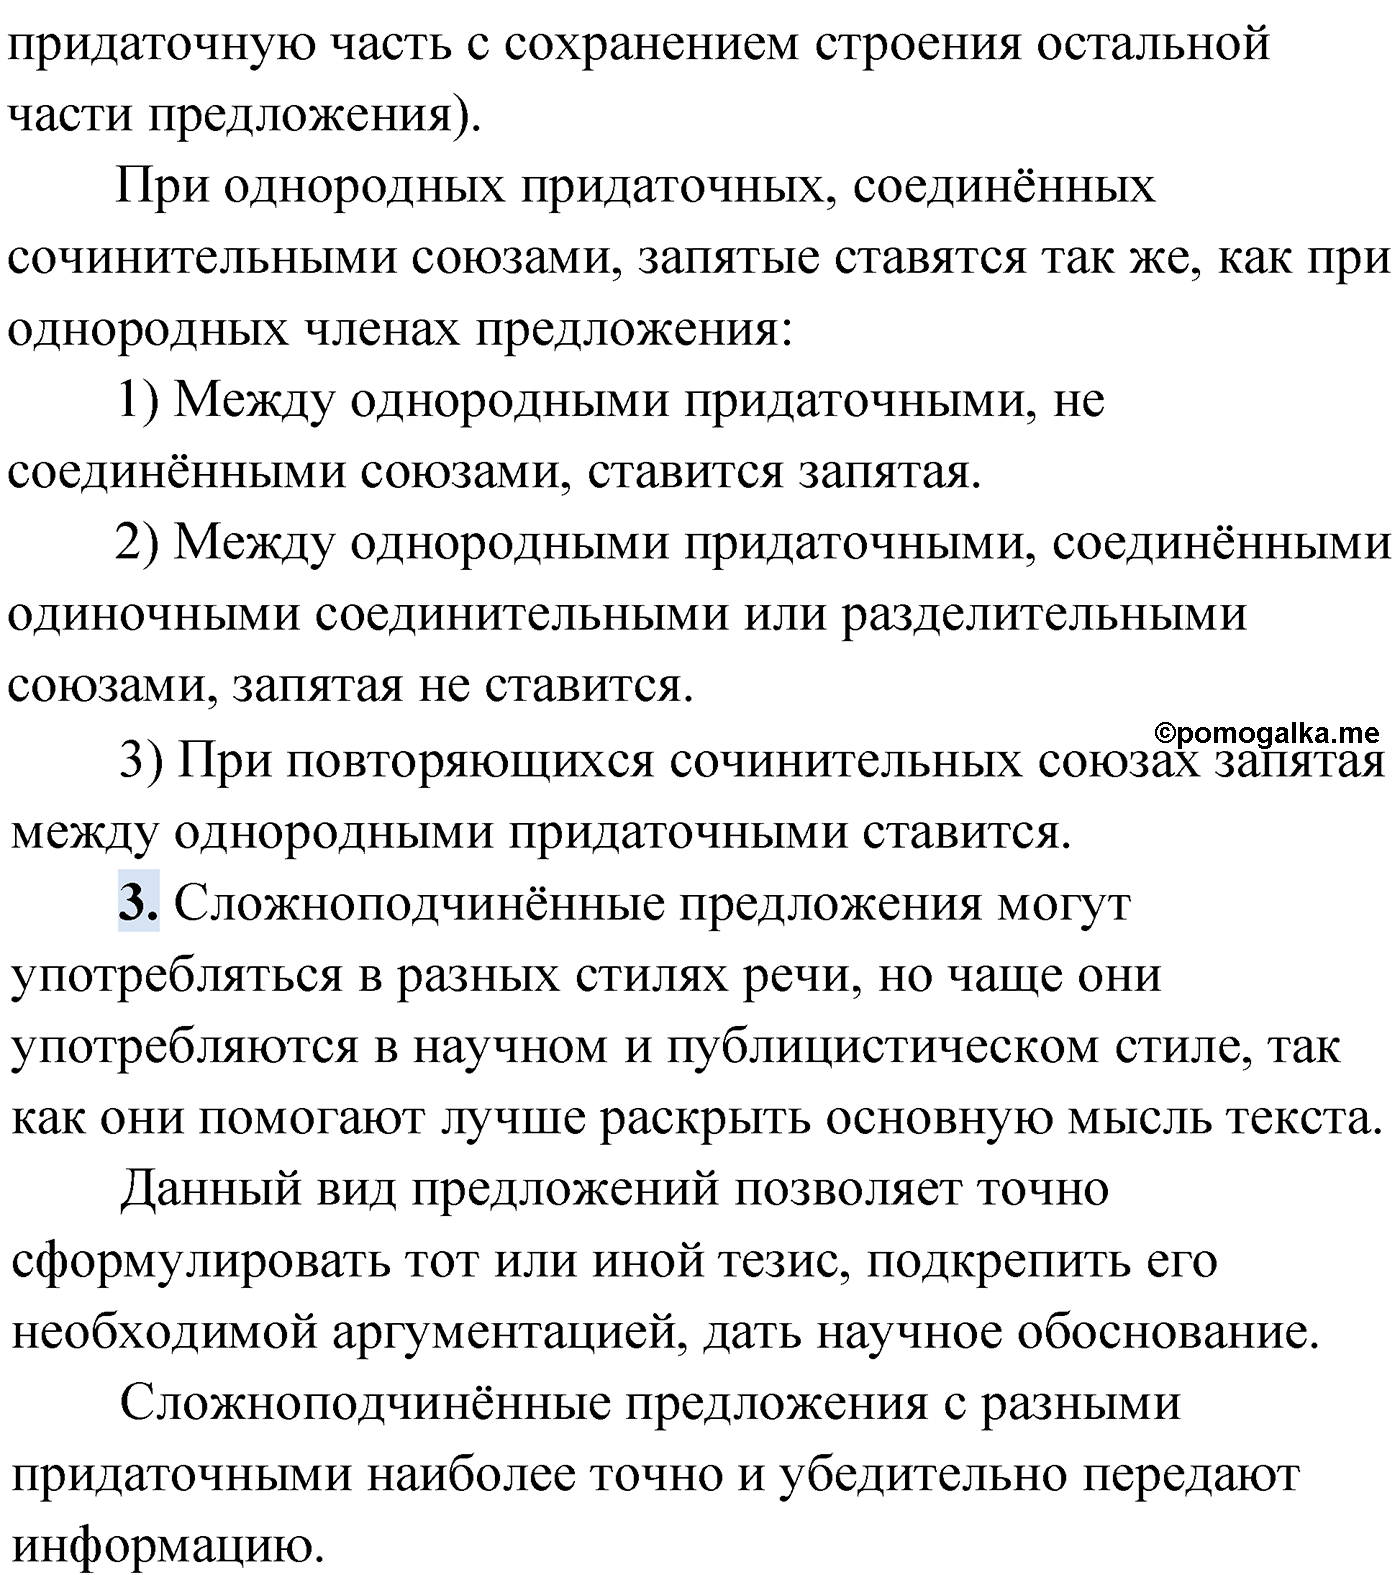 Проверь себя, Страница 152 русский язык 9 класс Мурина 2019 год